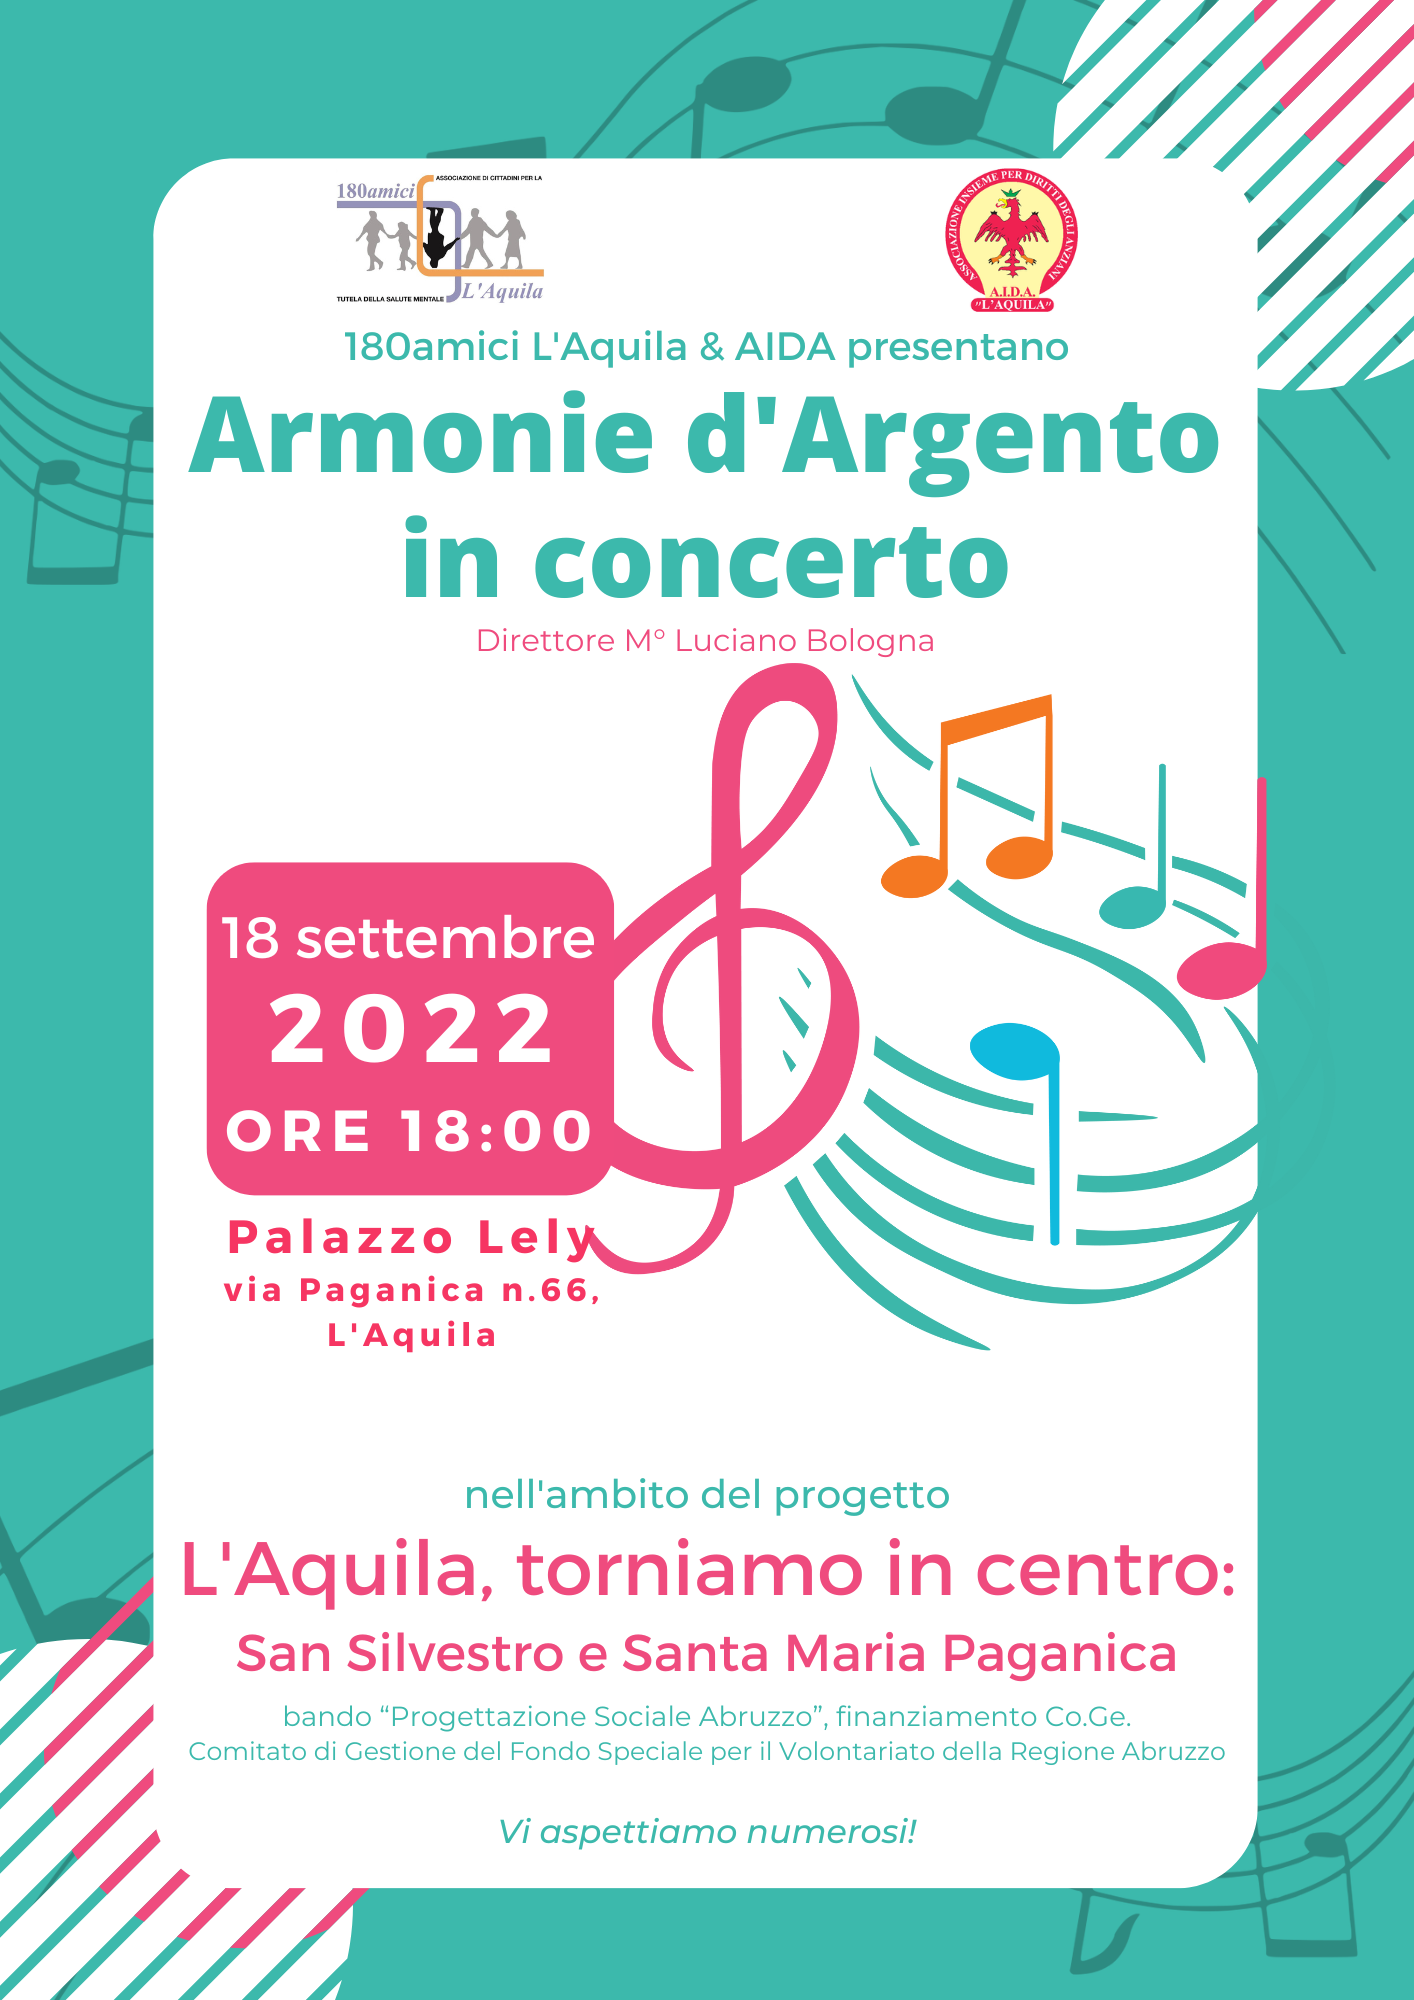 L'Aquila, torniamo in centro: San Silvestro e Santa Maria Paganica Armonie d'Argento in concerto